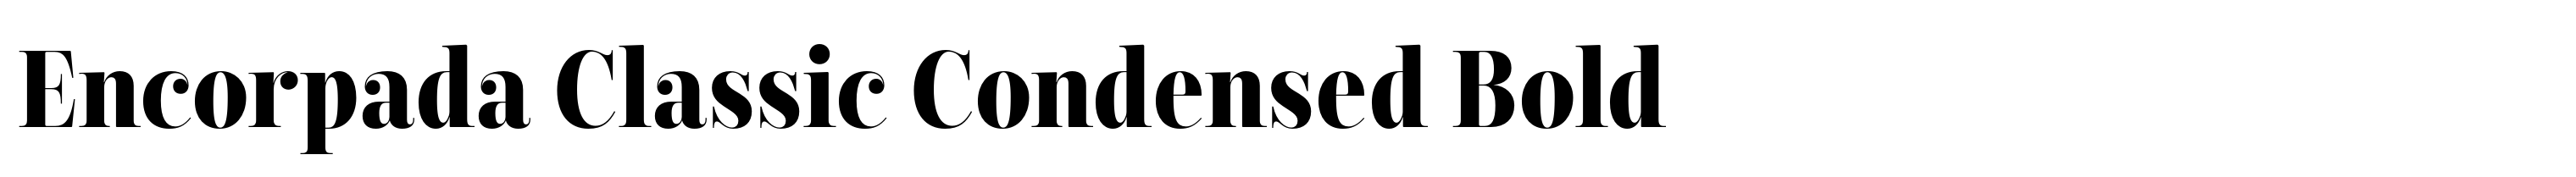 Encorpada Classic Condensed Bold